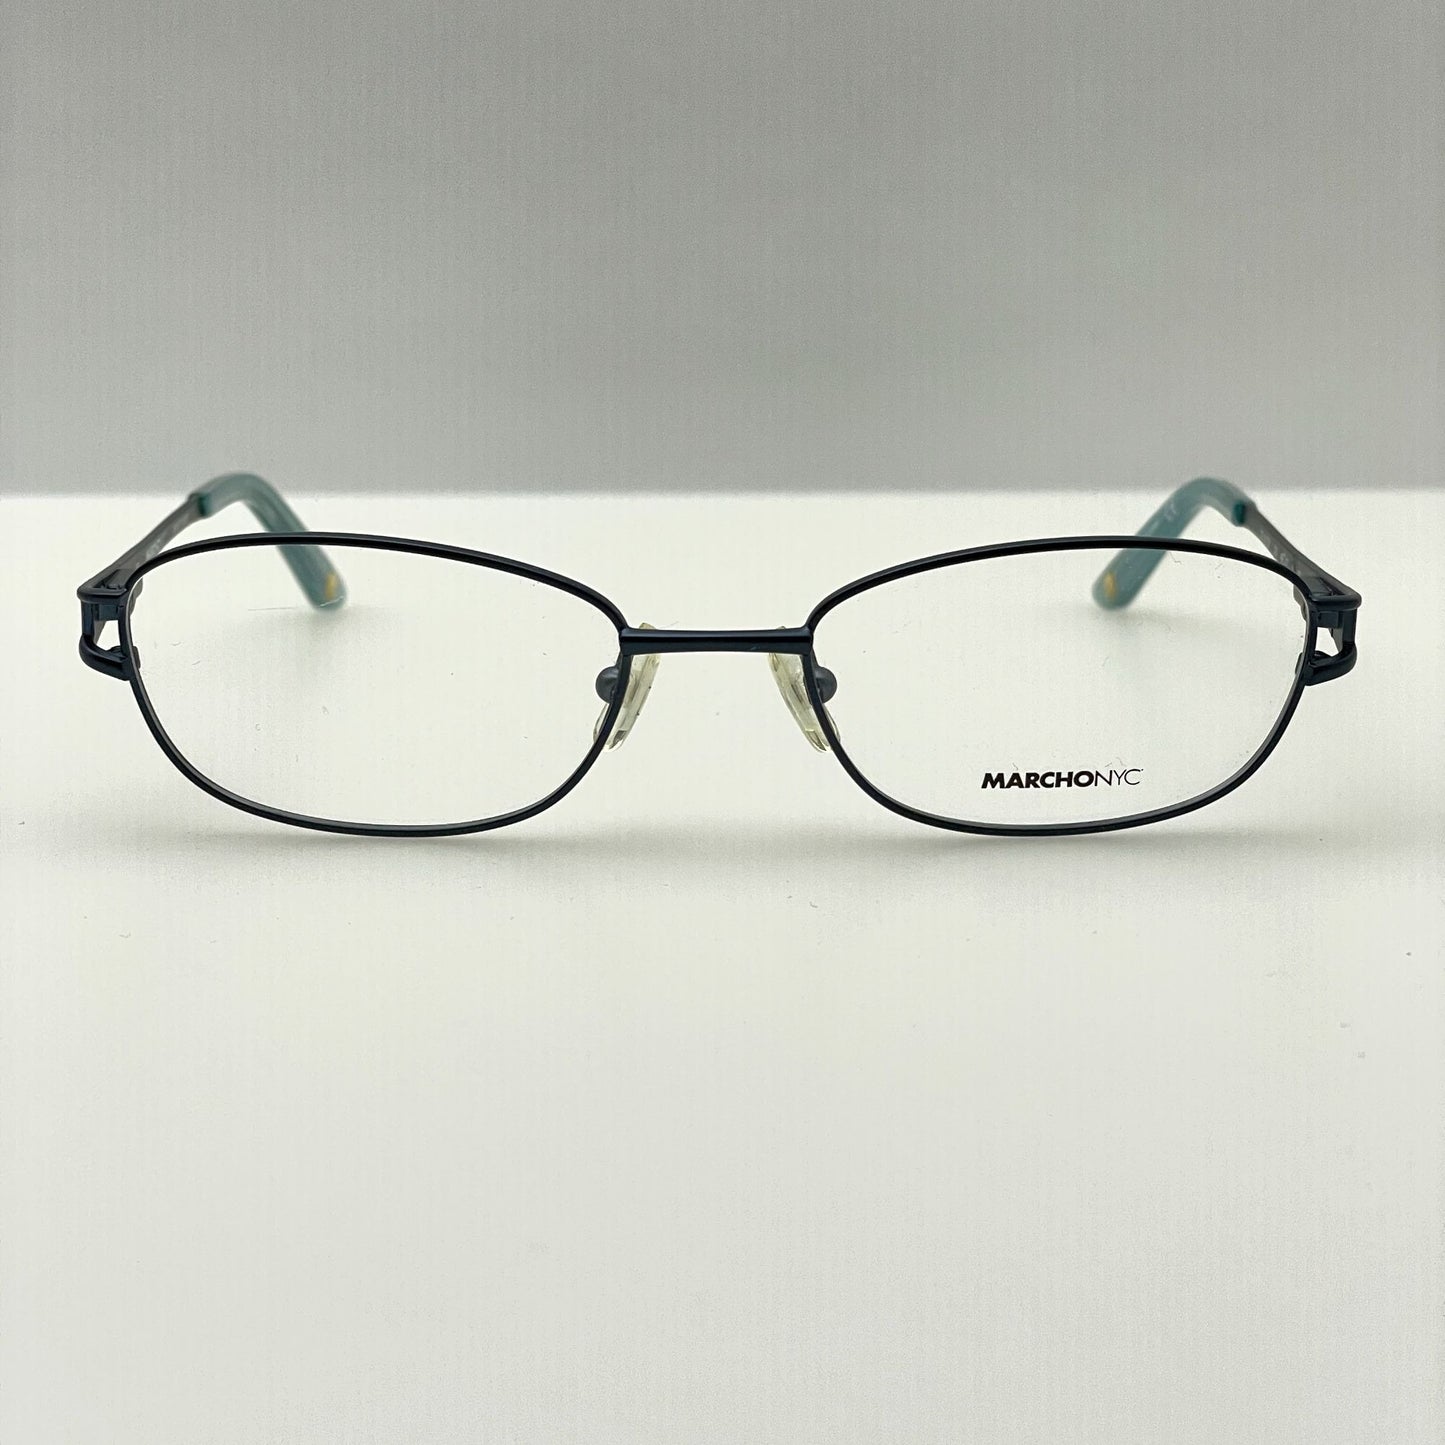 Marchon Eyeglasses Eye Glasses Frames NYC East Side Delancey 320 49-17-135